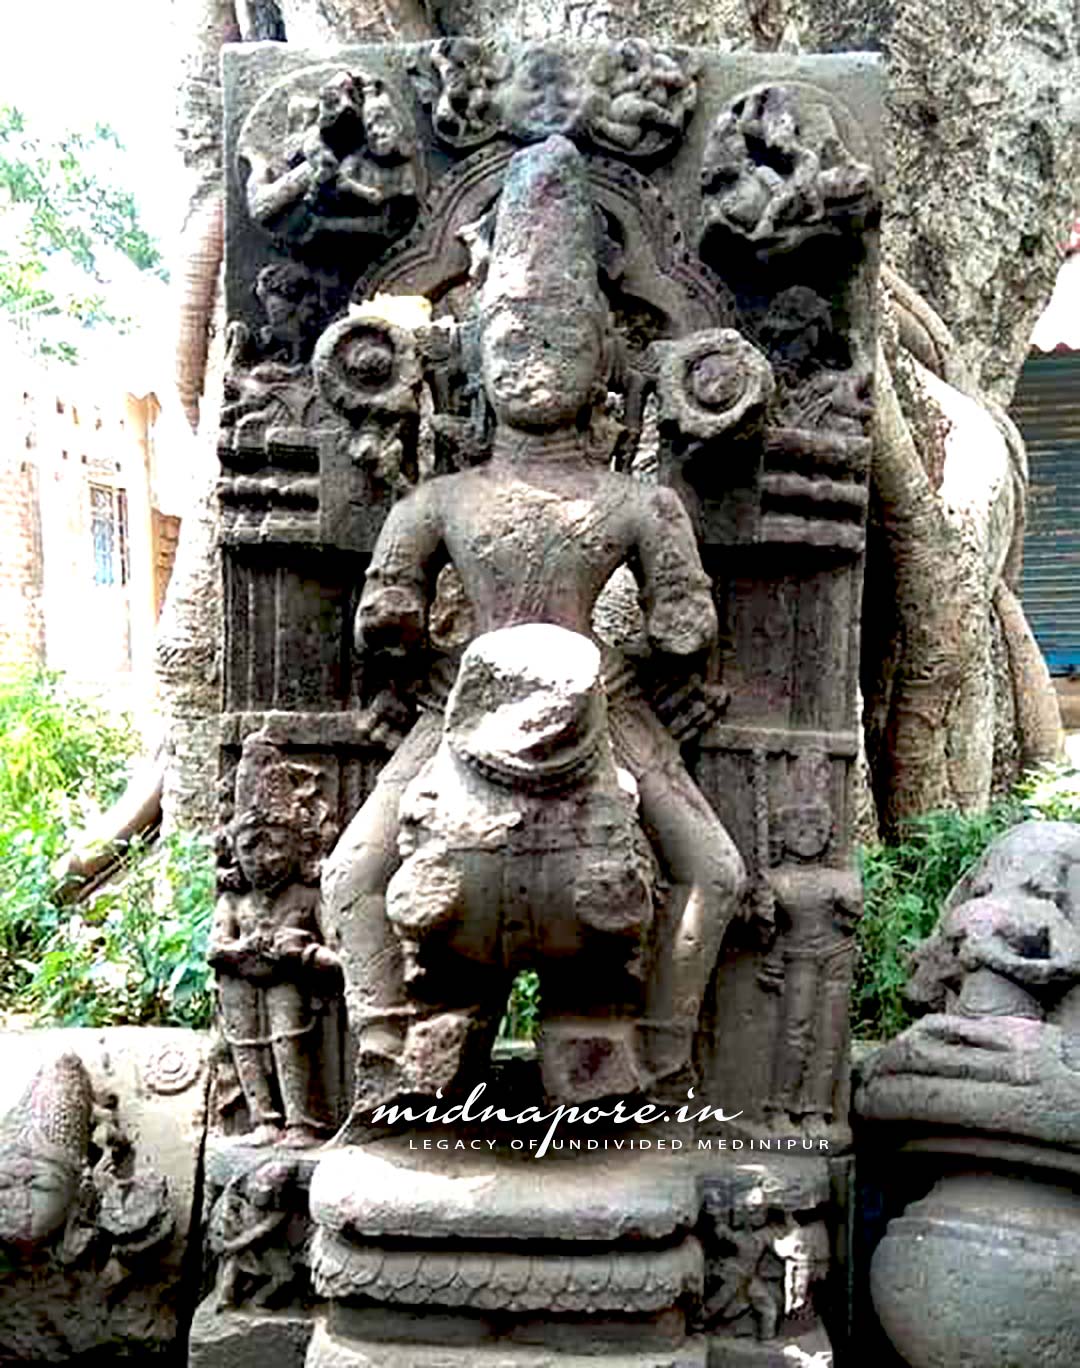 মোগলমারি কেন্দ্রিক প্রত্নপর্যটন | Mughalmari centric Archaeological-tourism